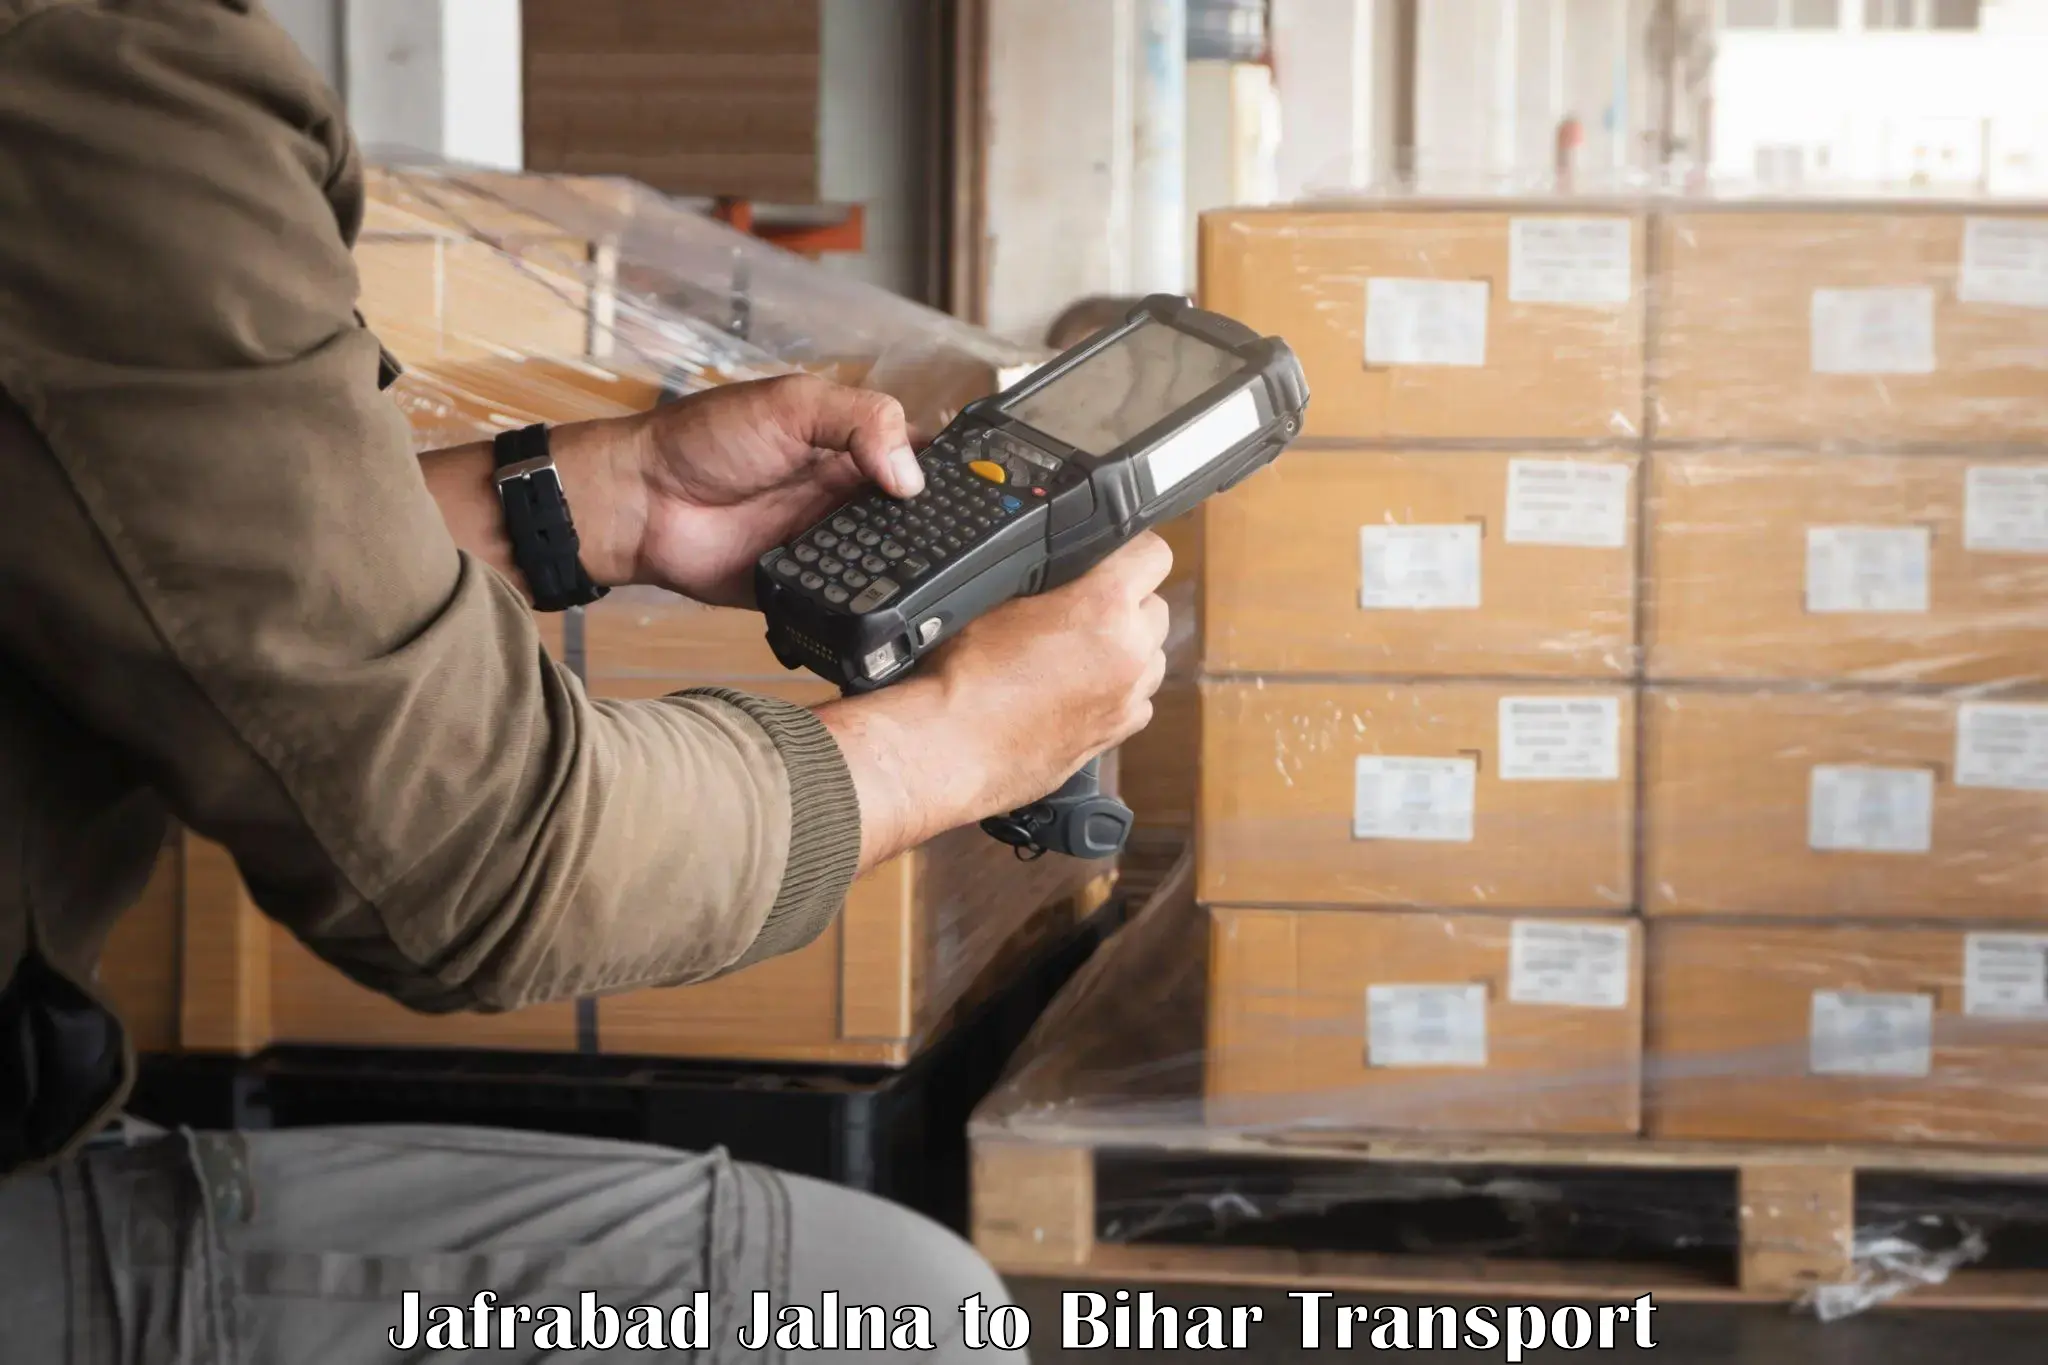 Goods delivery service Jafrabad Jalna to Lakhisarai